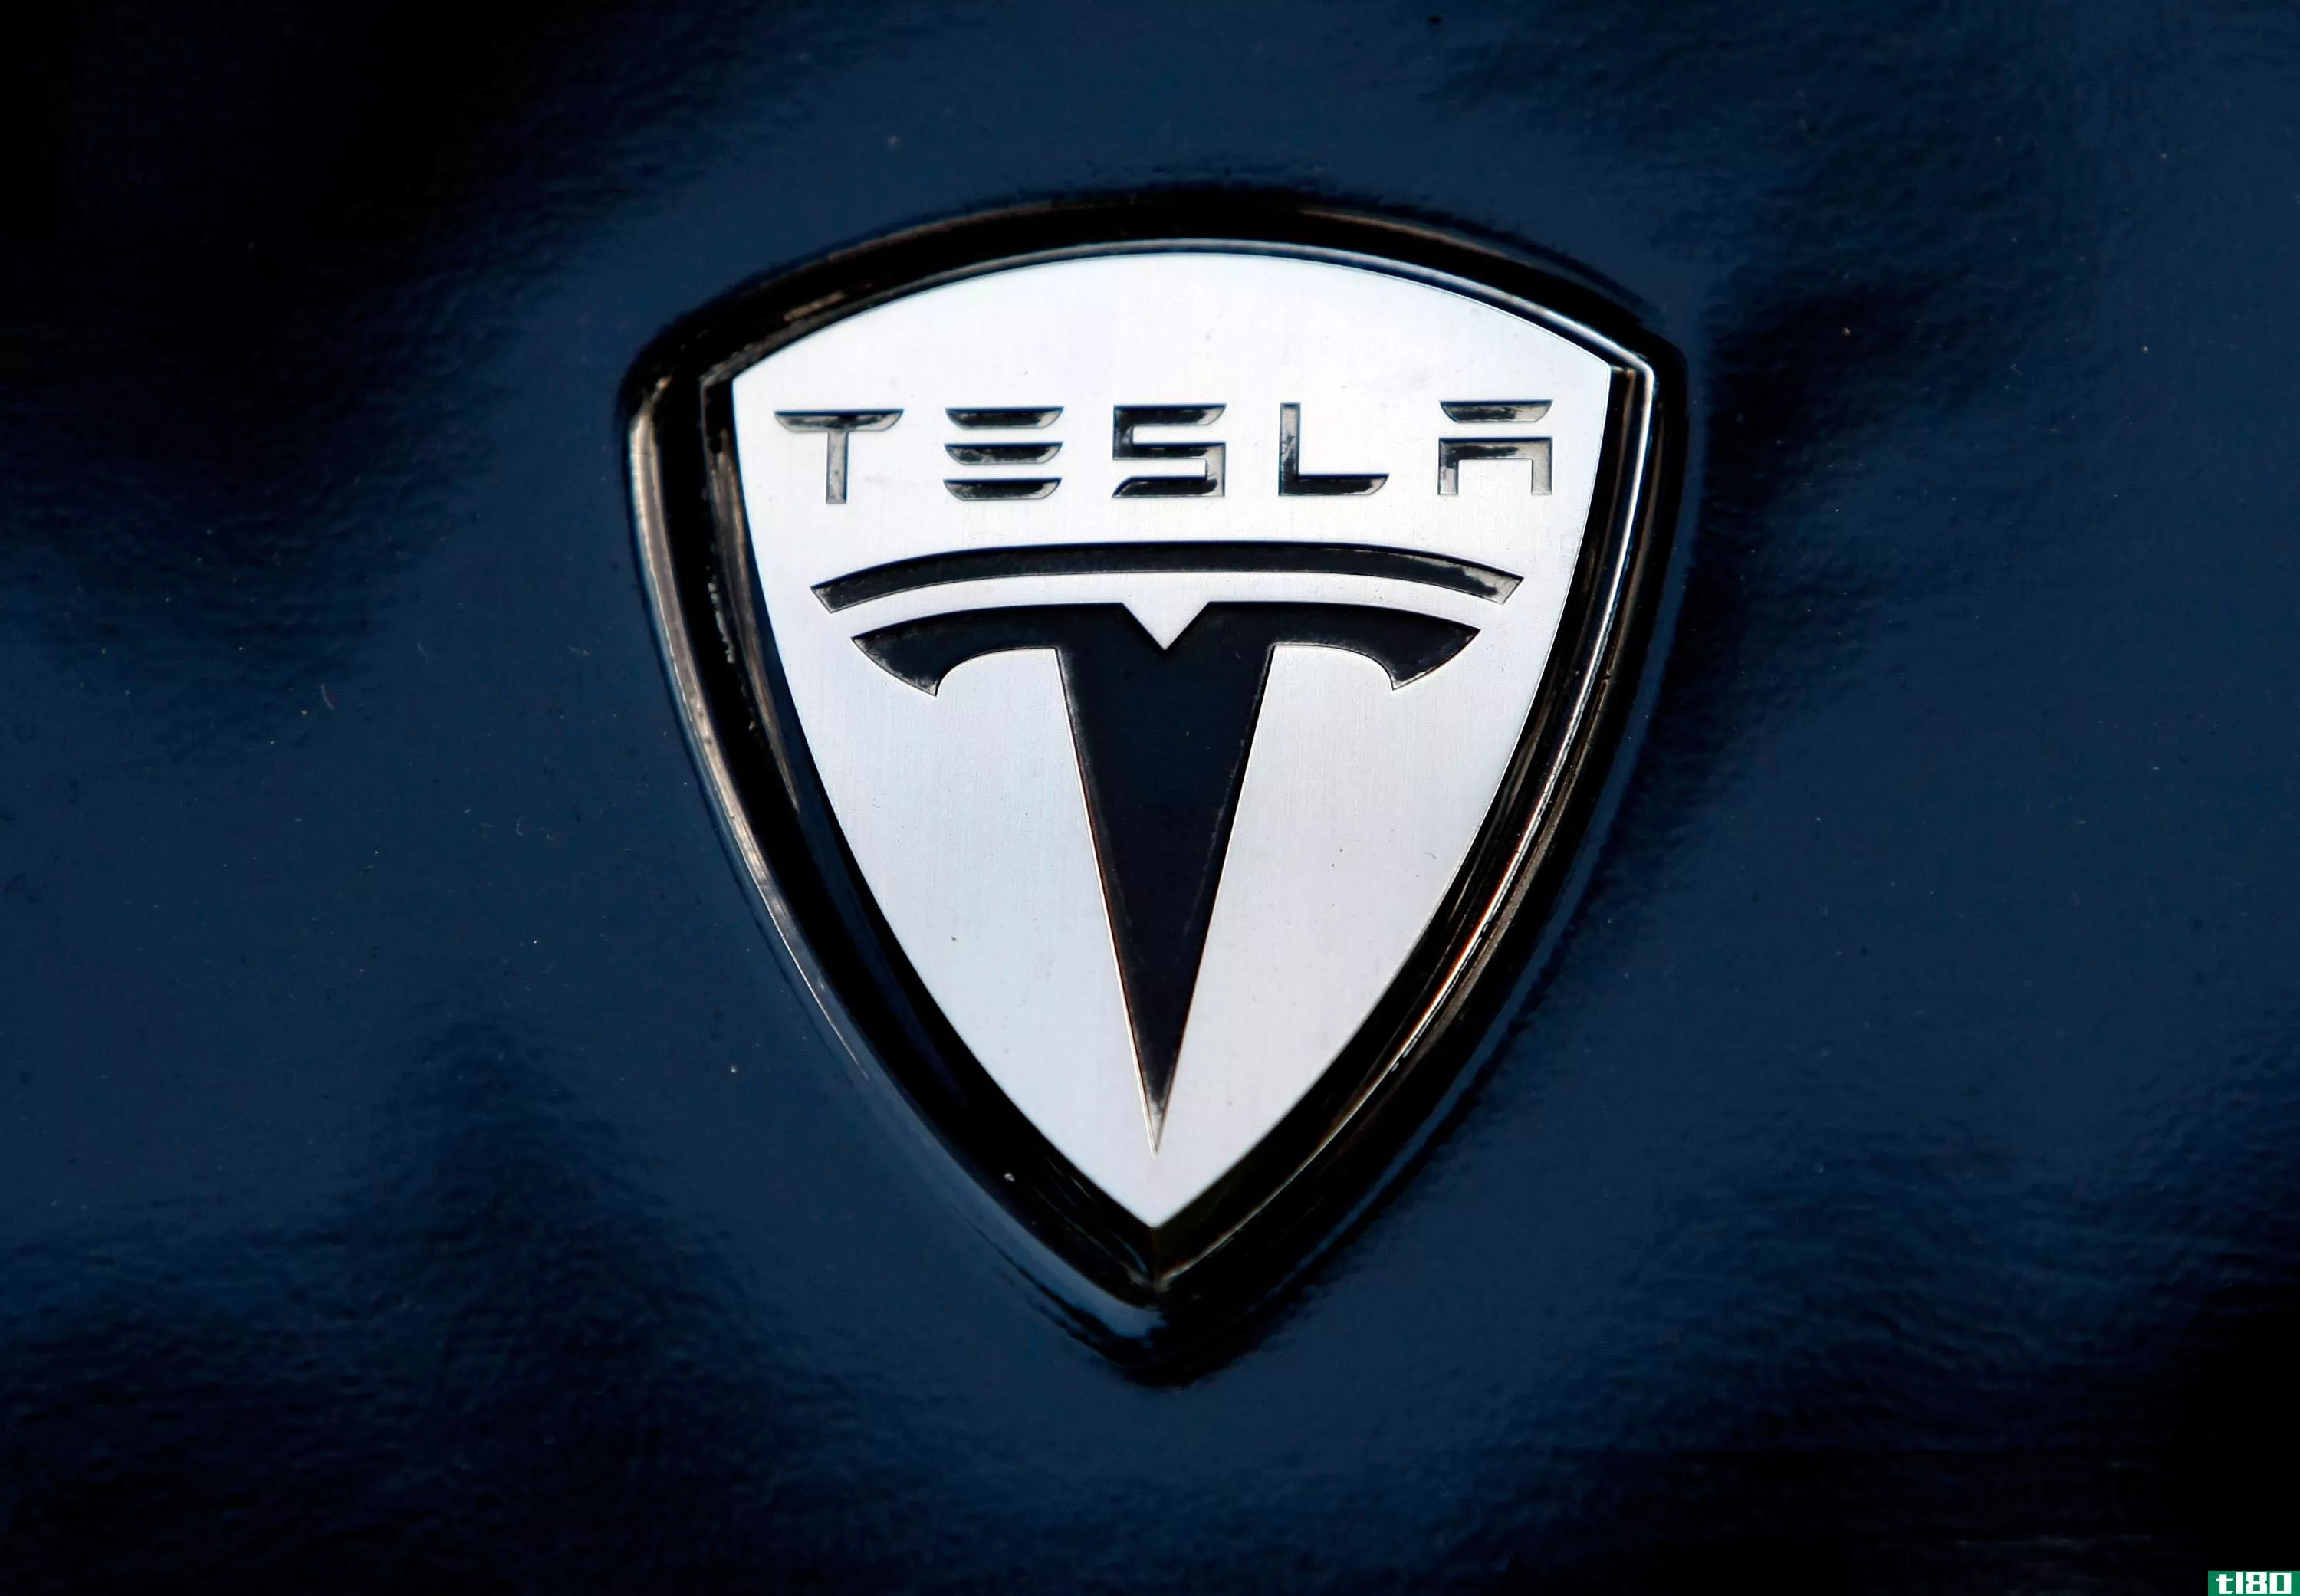 特斯拉工程师在针对电动汽车制造商的诉讼中声称受到“不必要和普遍的骚扰”